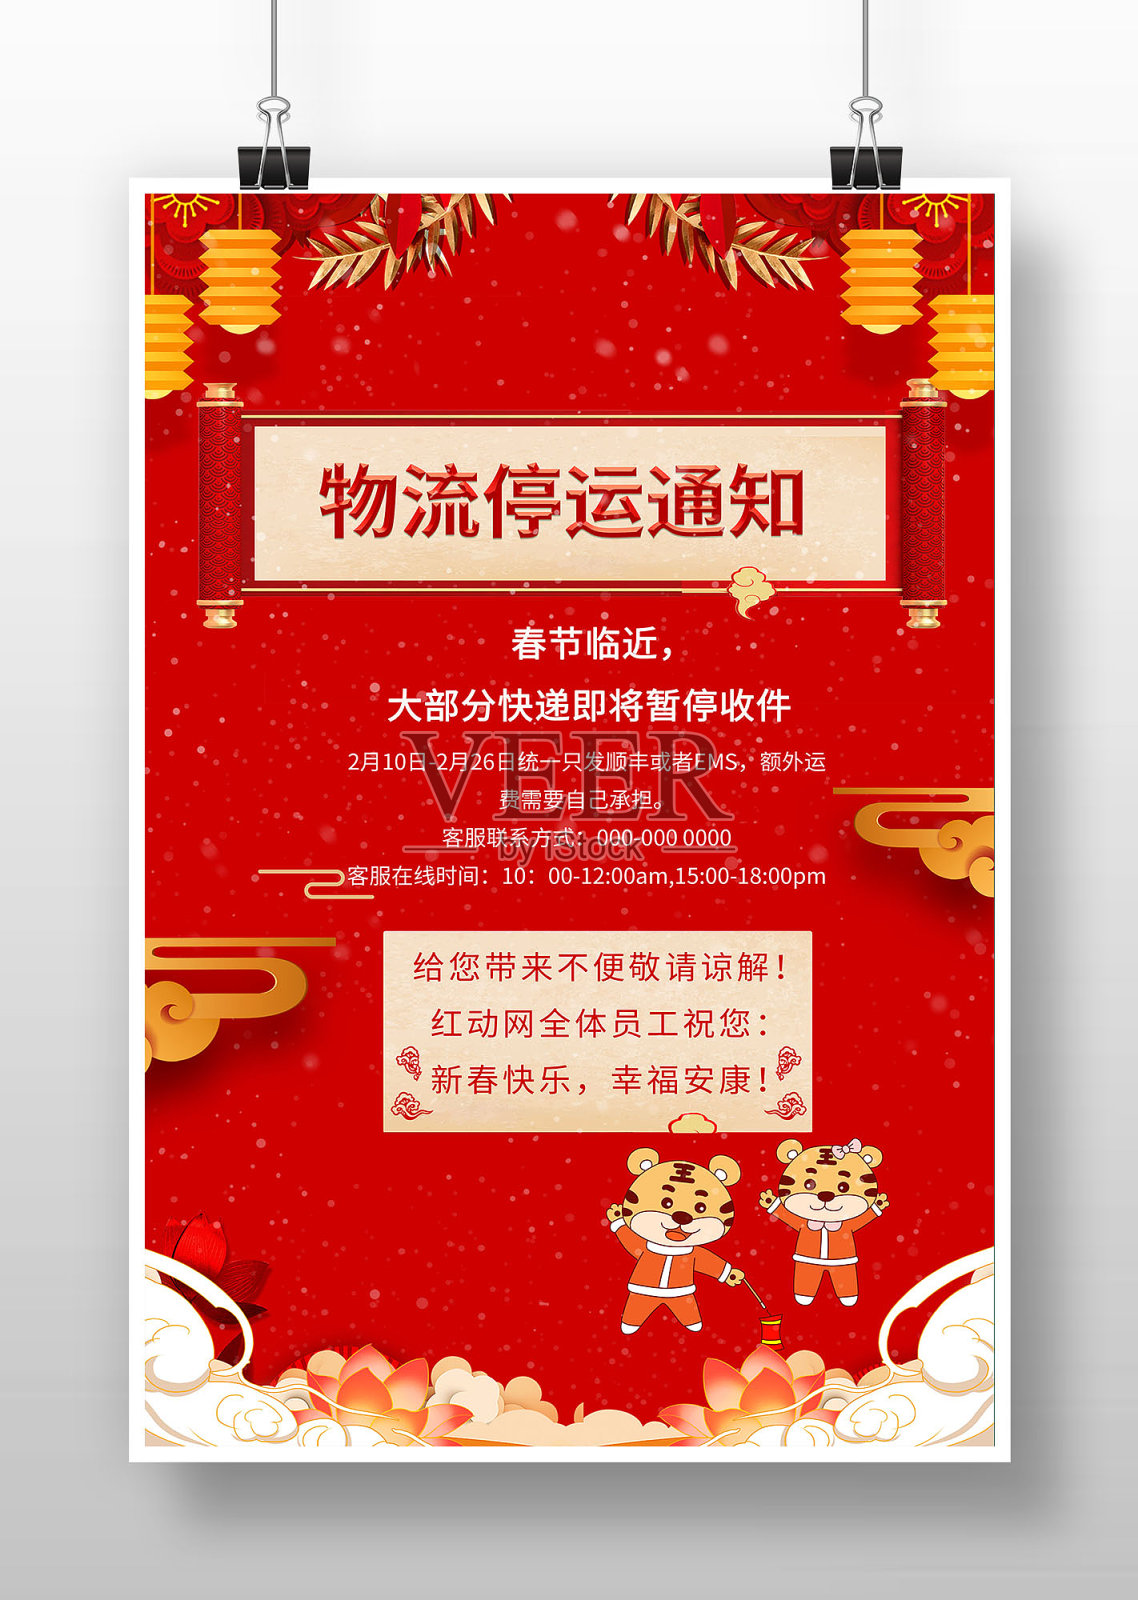 红色中国风物流停运通知海报设计模板素材